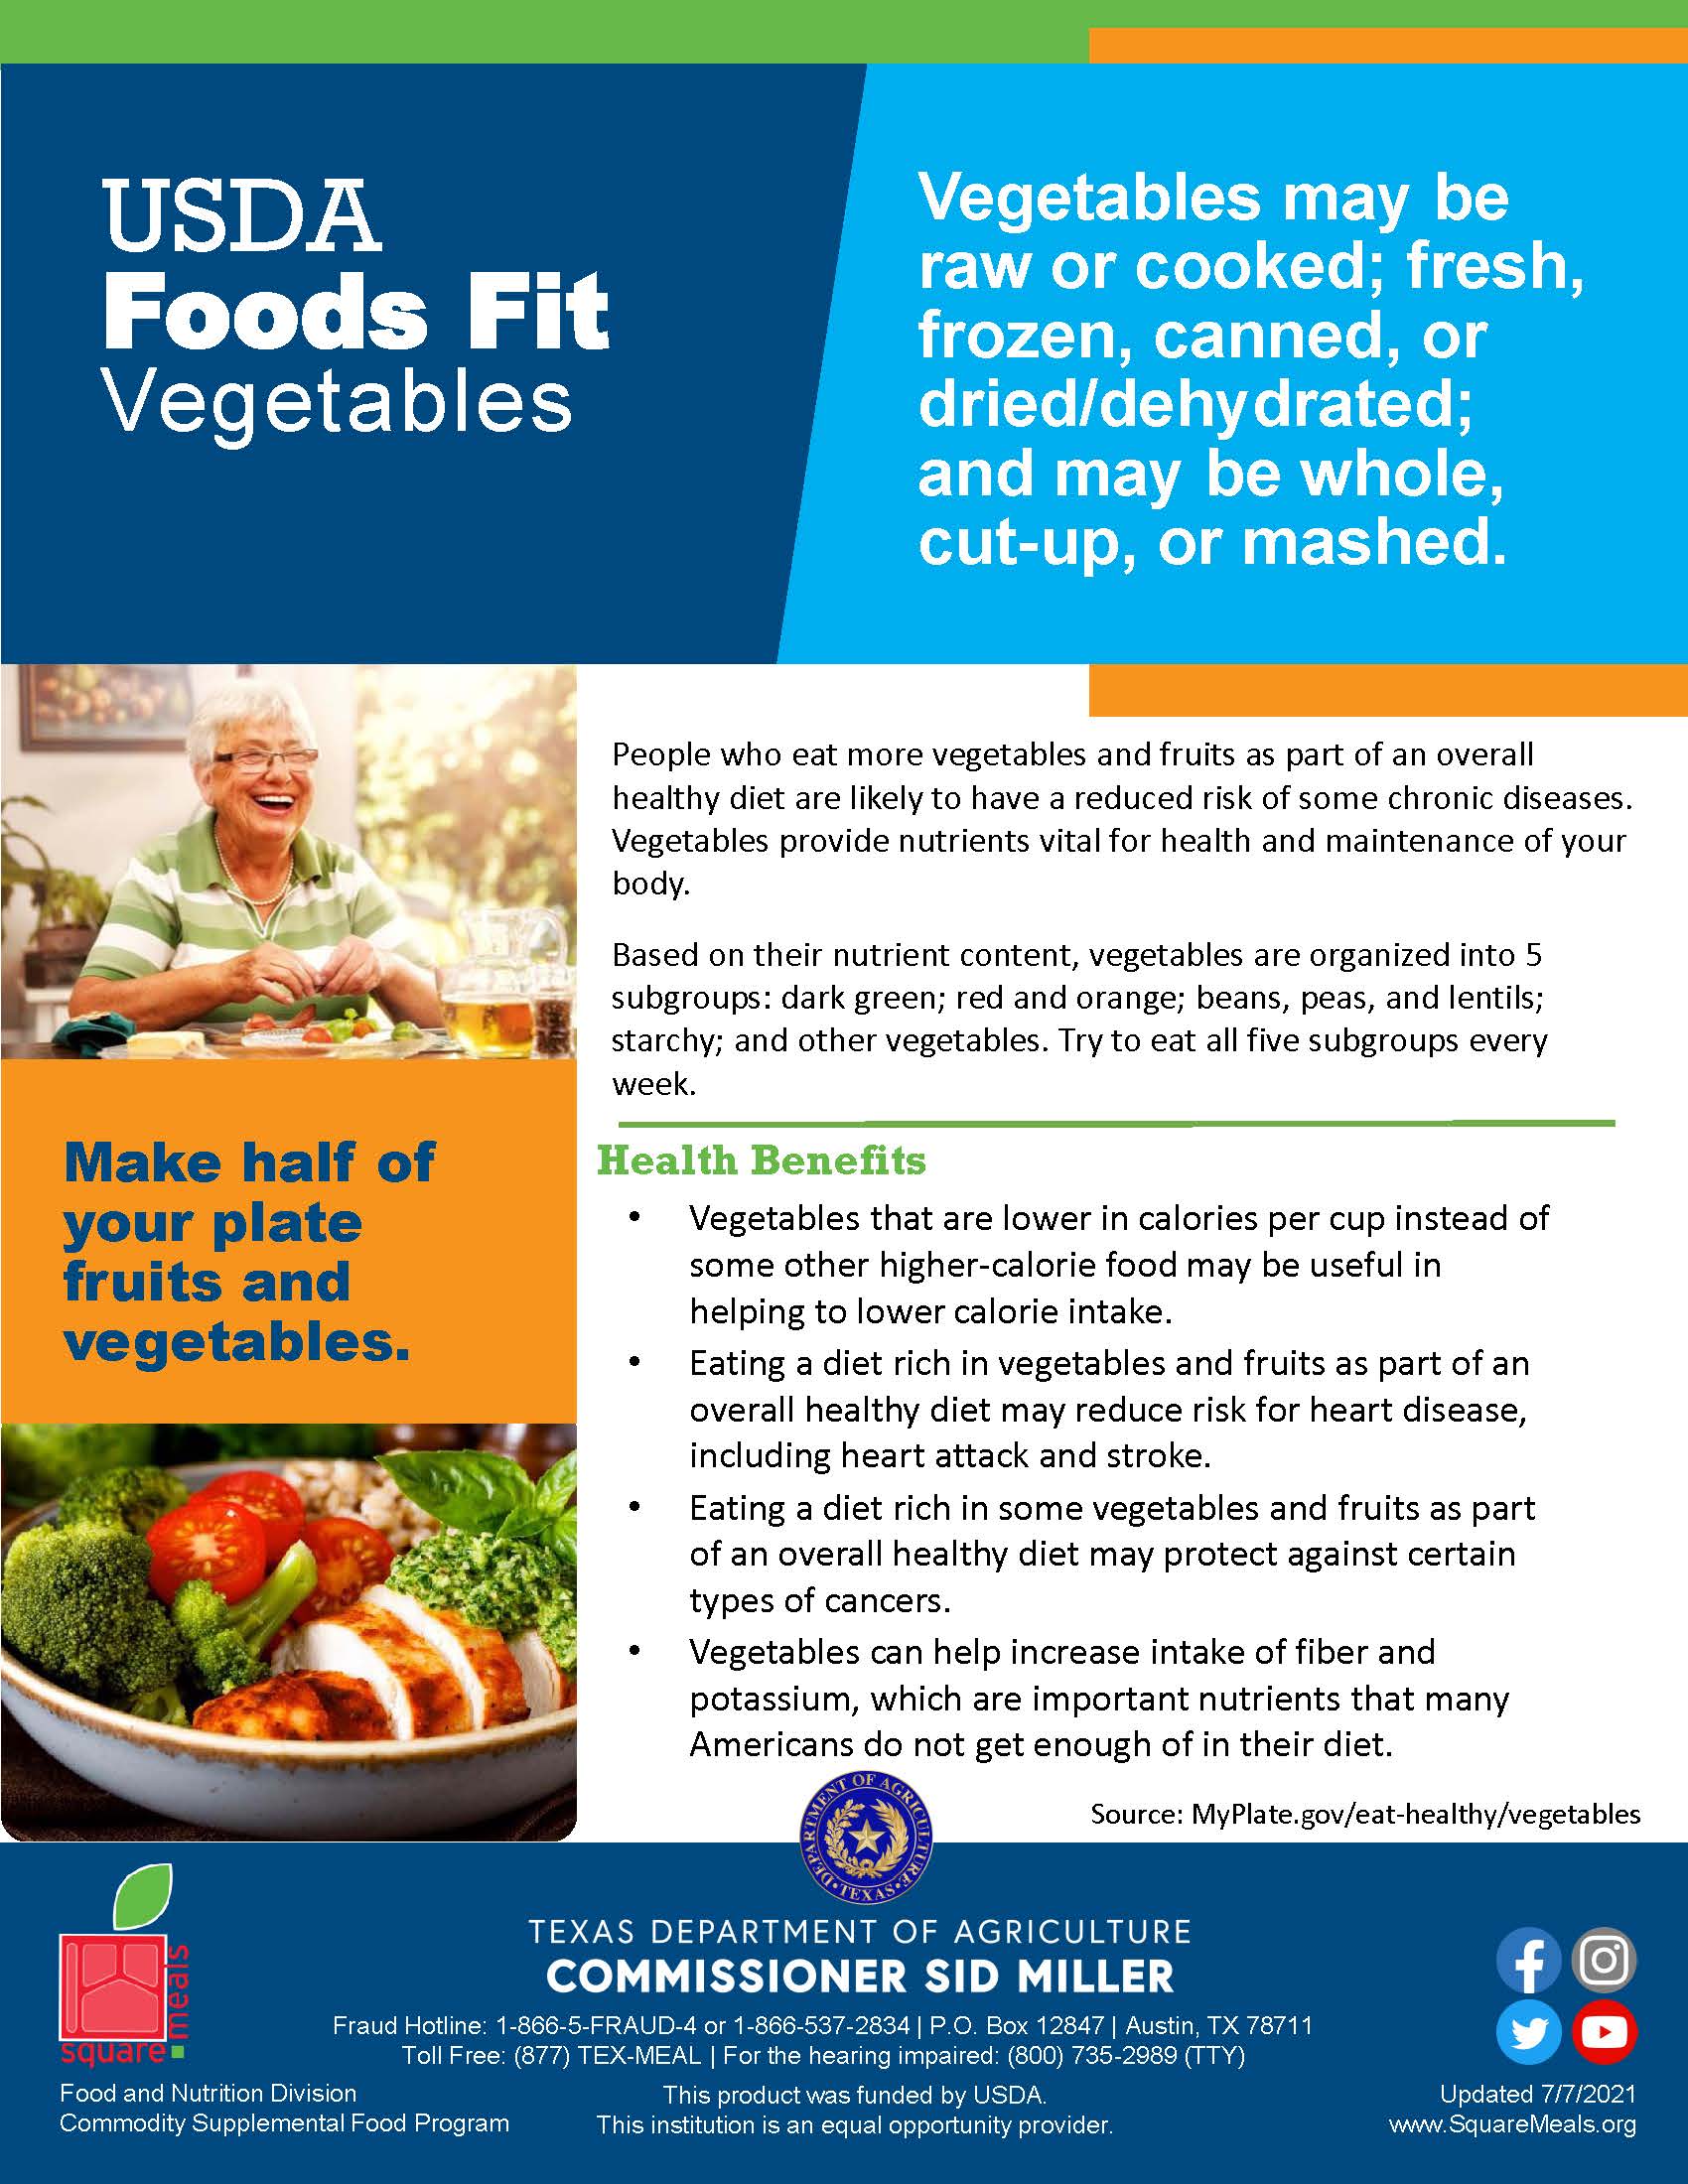 USDA Foods Fit - Vegetables